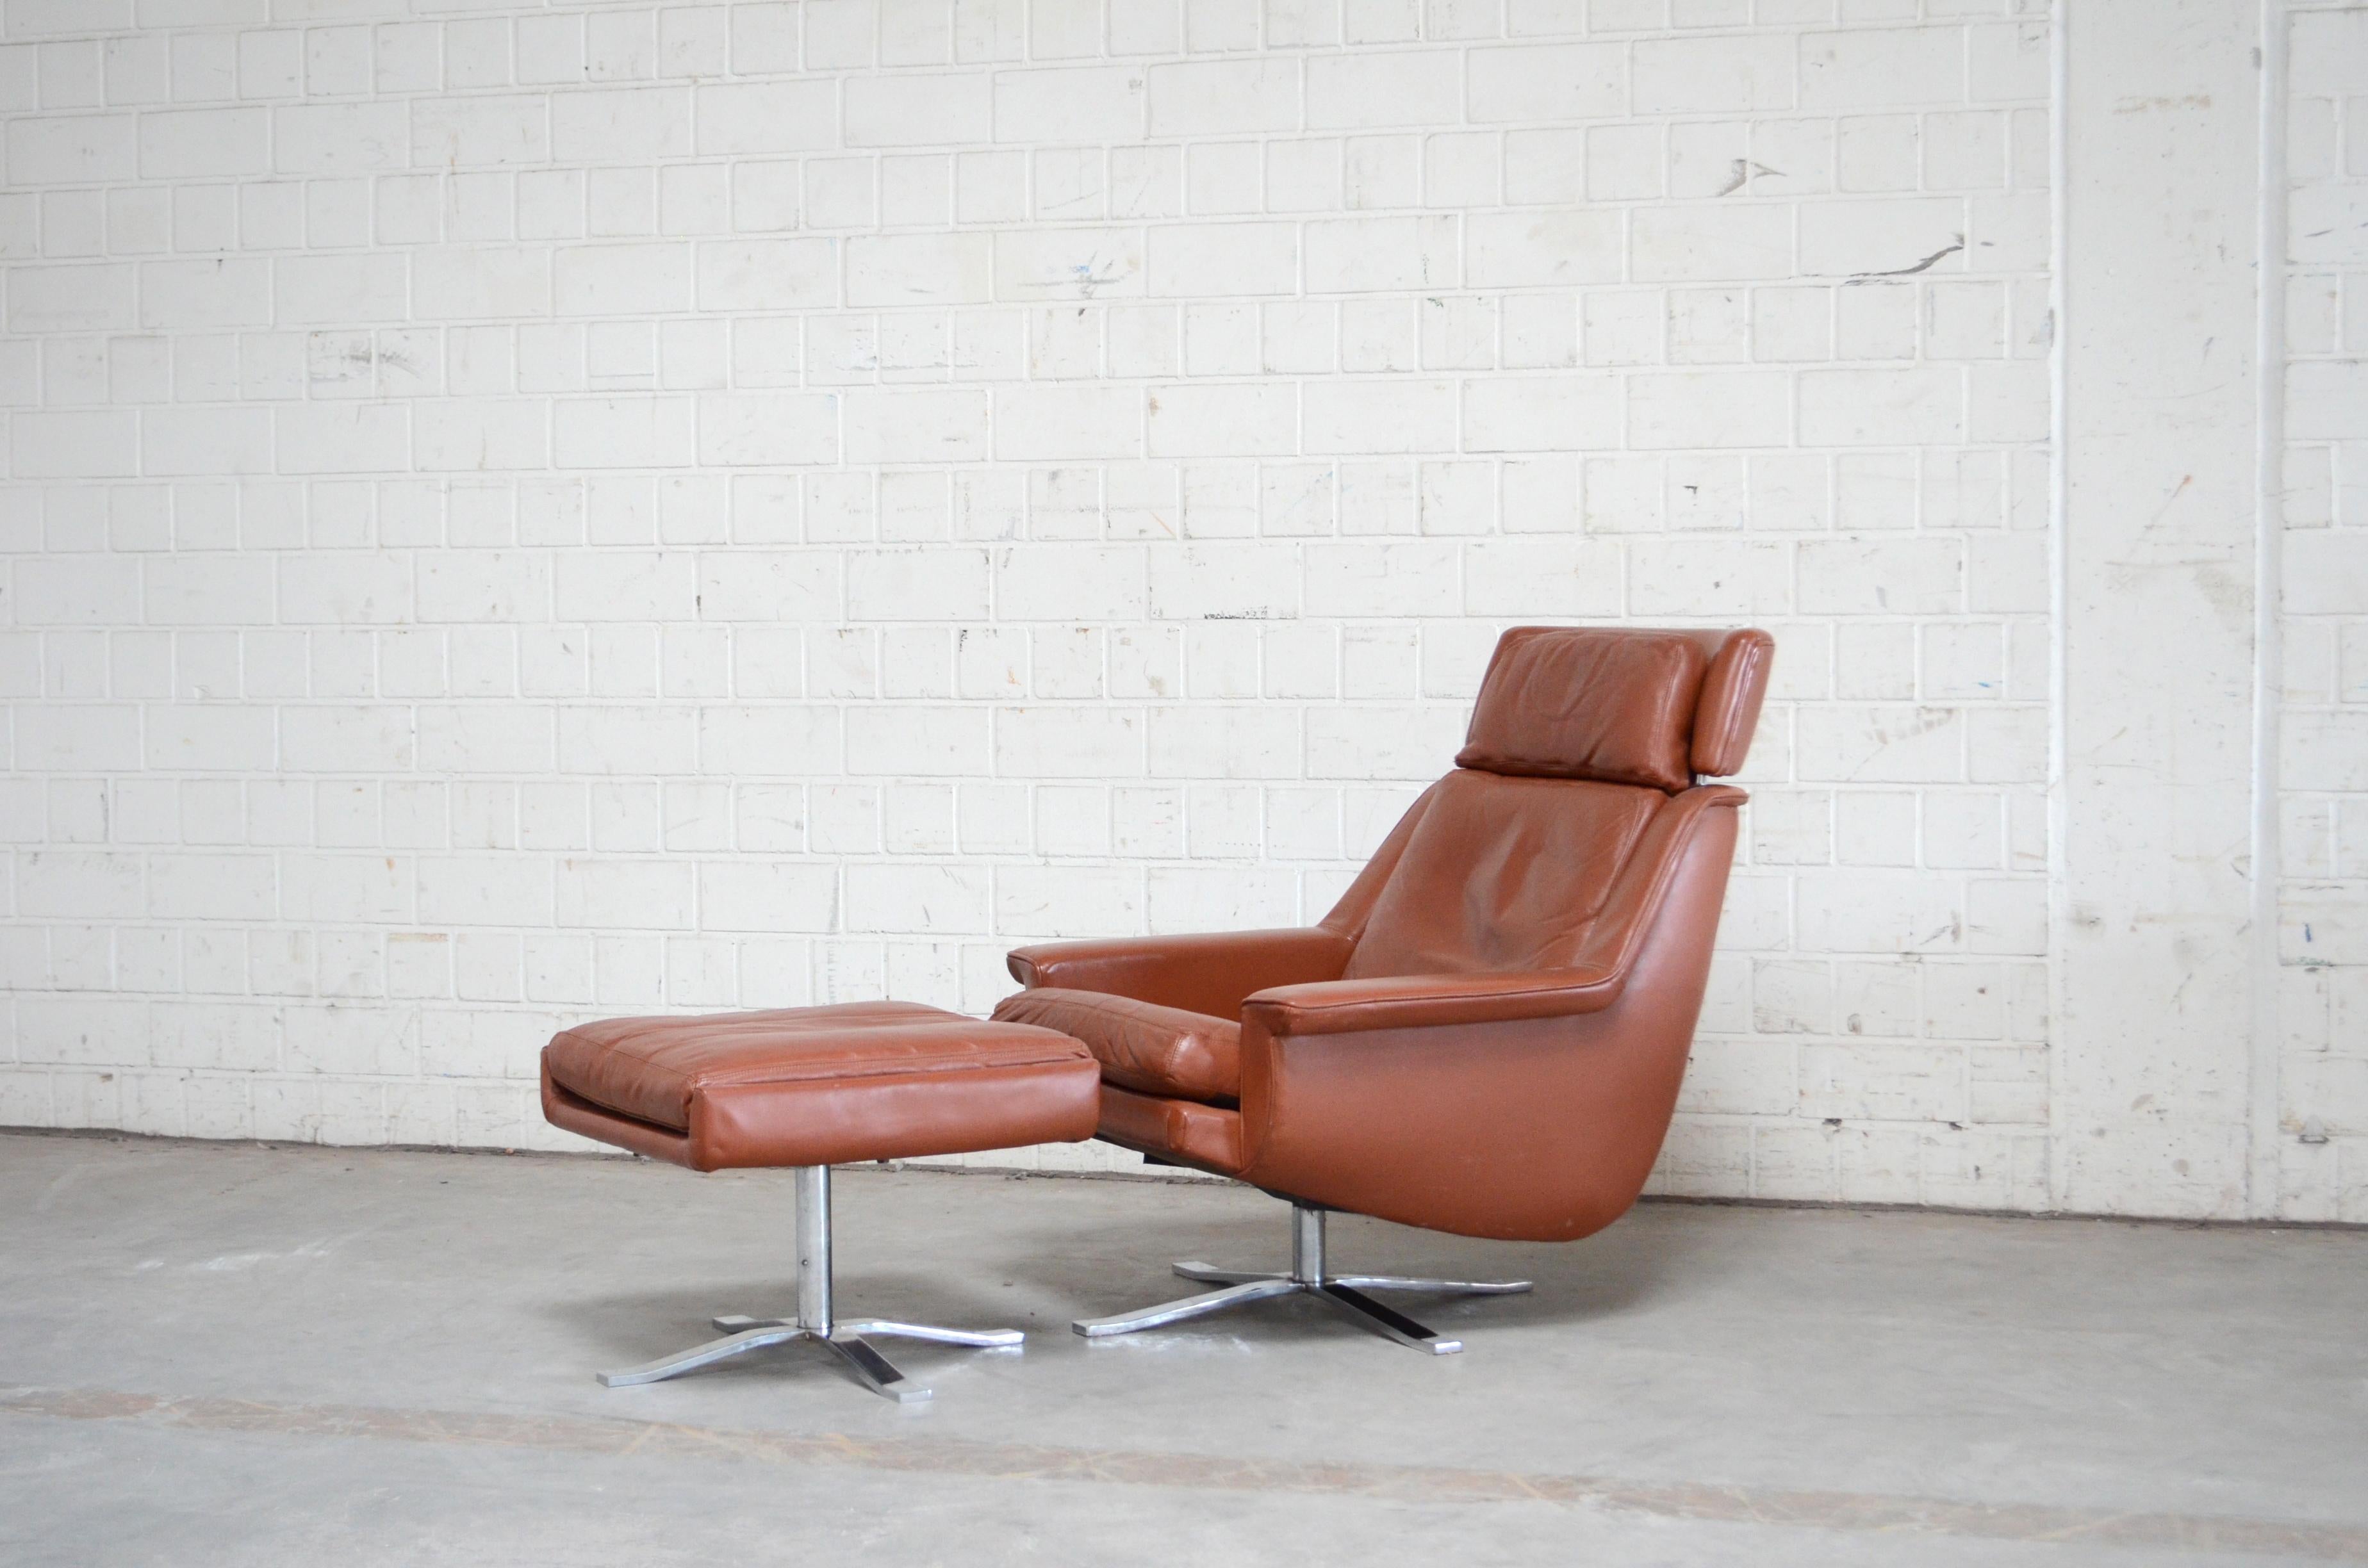 ESA Moebelwerk Danemark Modèle 802 chaise longue et ottoman. Le design est celui de Werner Langenfeld dans les années 1960
Ce fauteuil et cet ottoman ont été fabriqués au Danemark et sont en cuir aniline rouge brandy.
Modèle rare avec une base